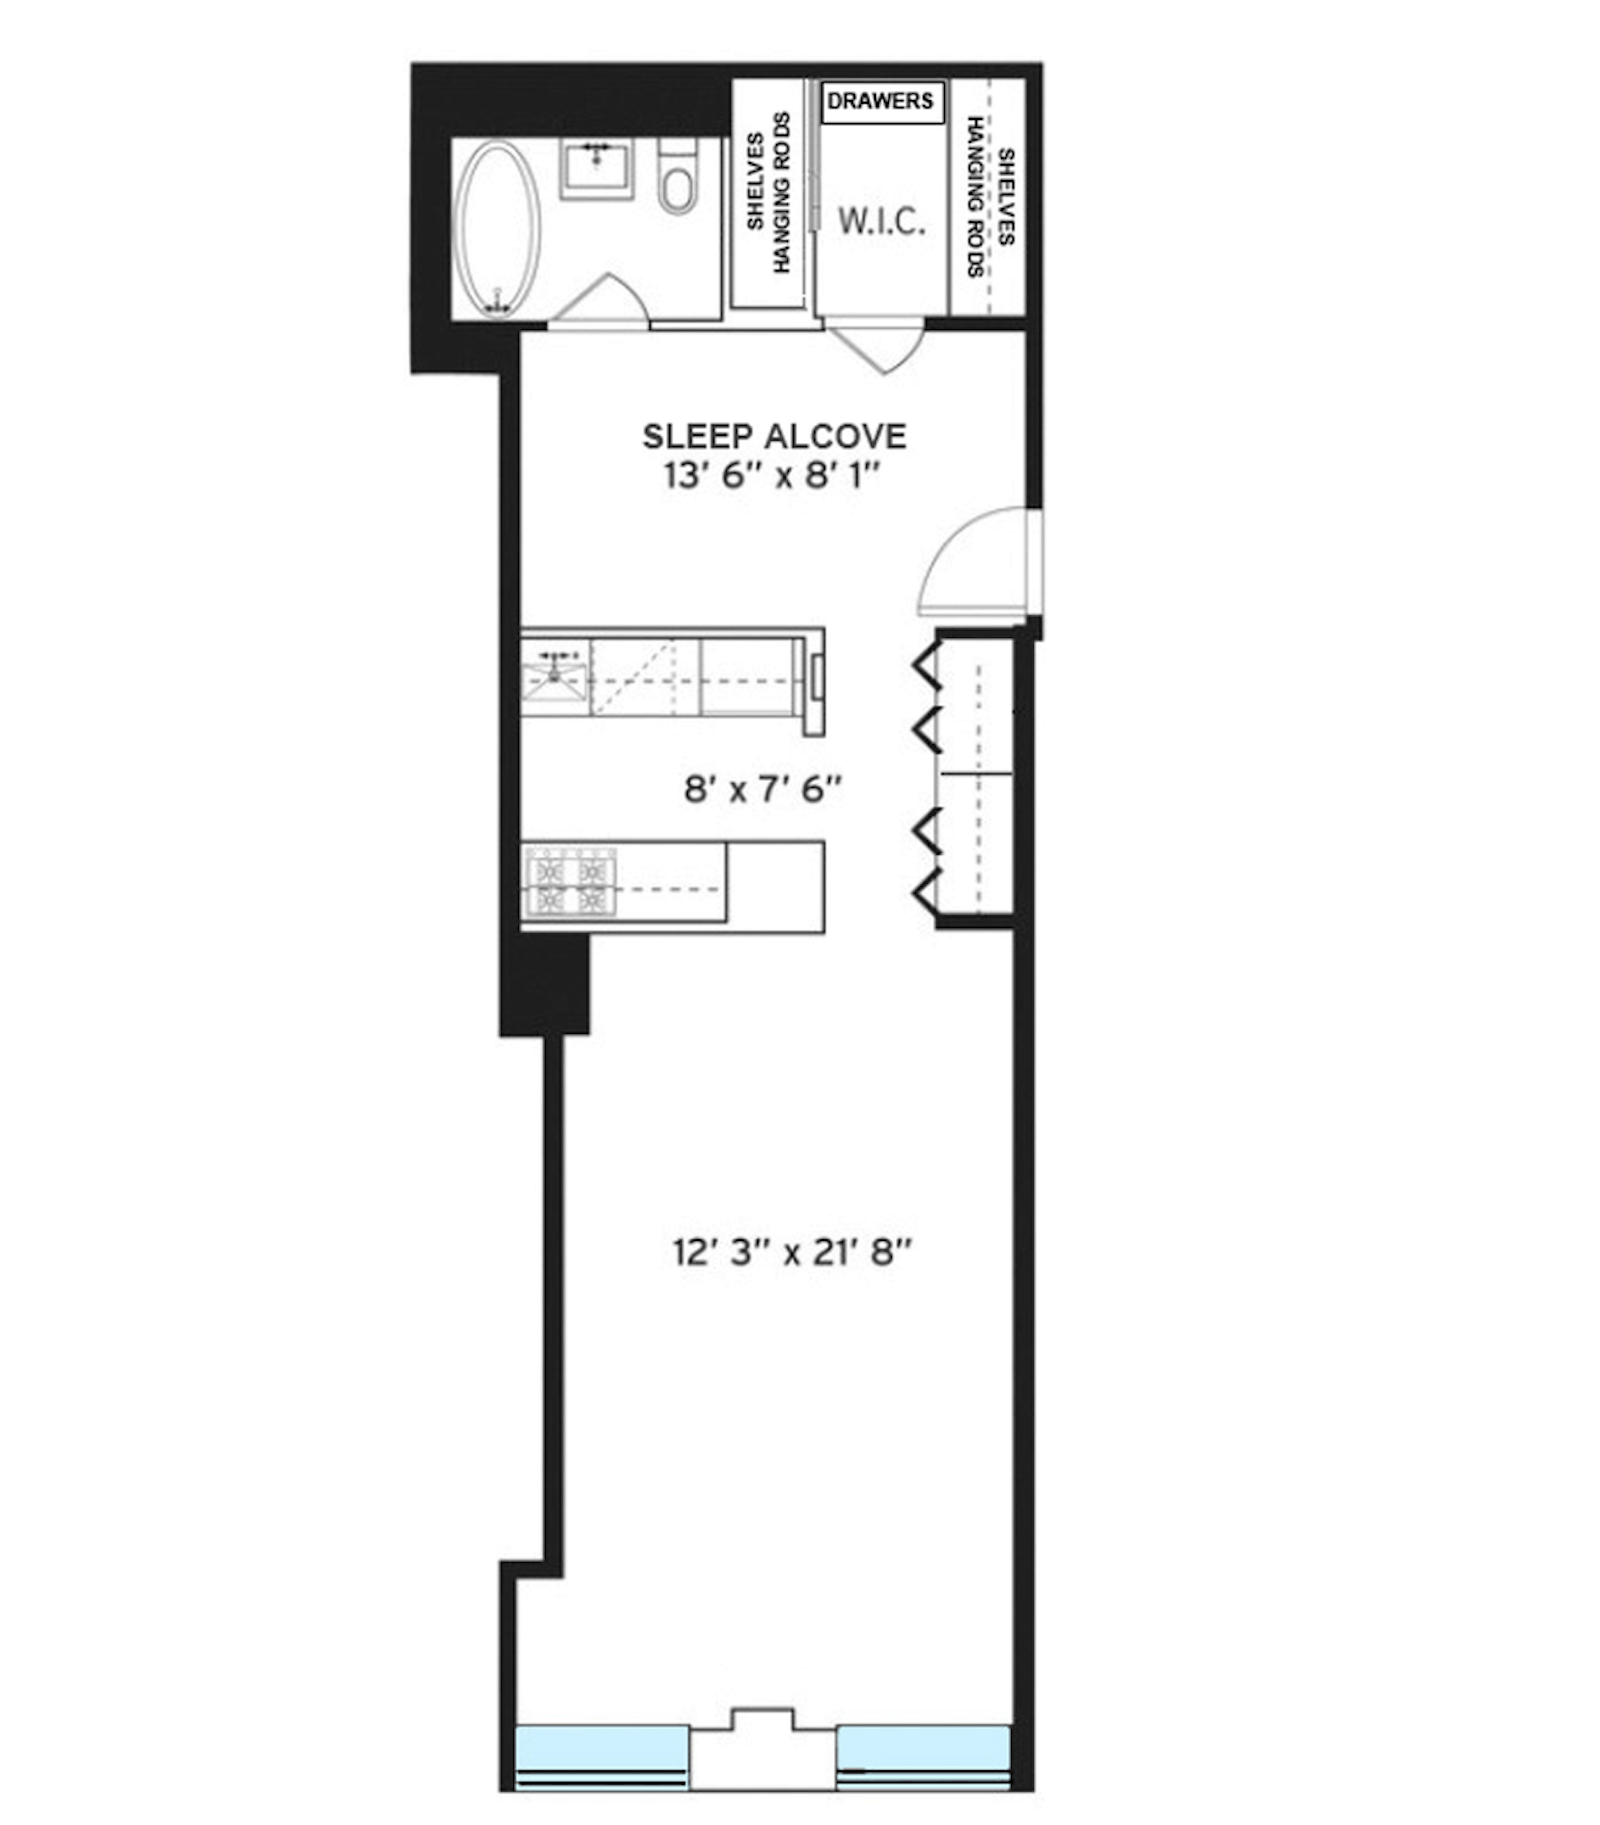 Floorplan for 99 John Street, 512